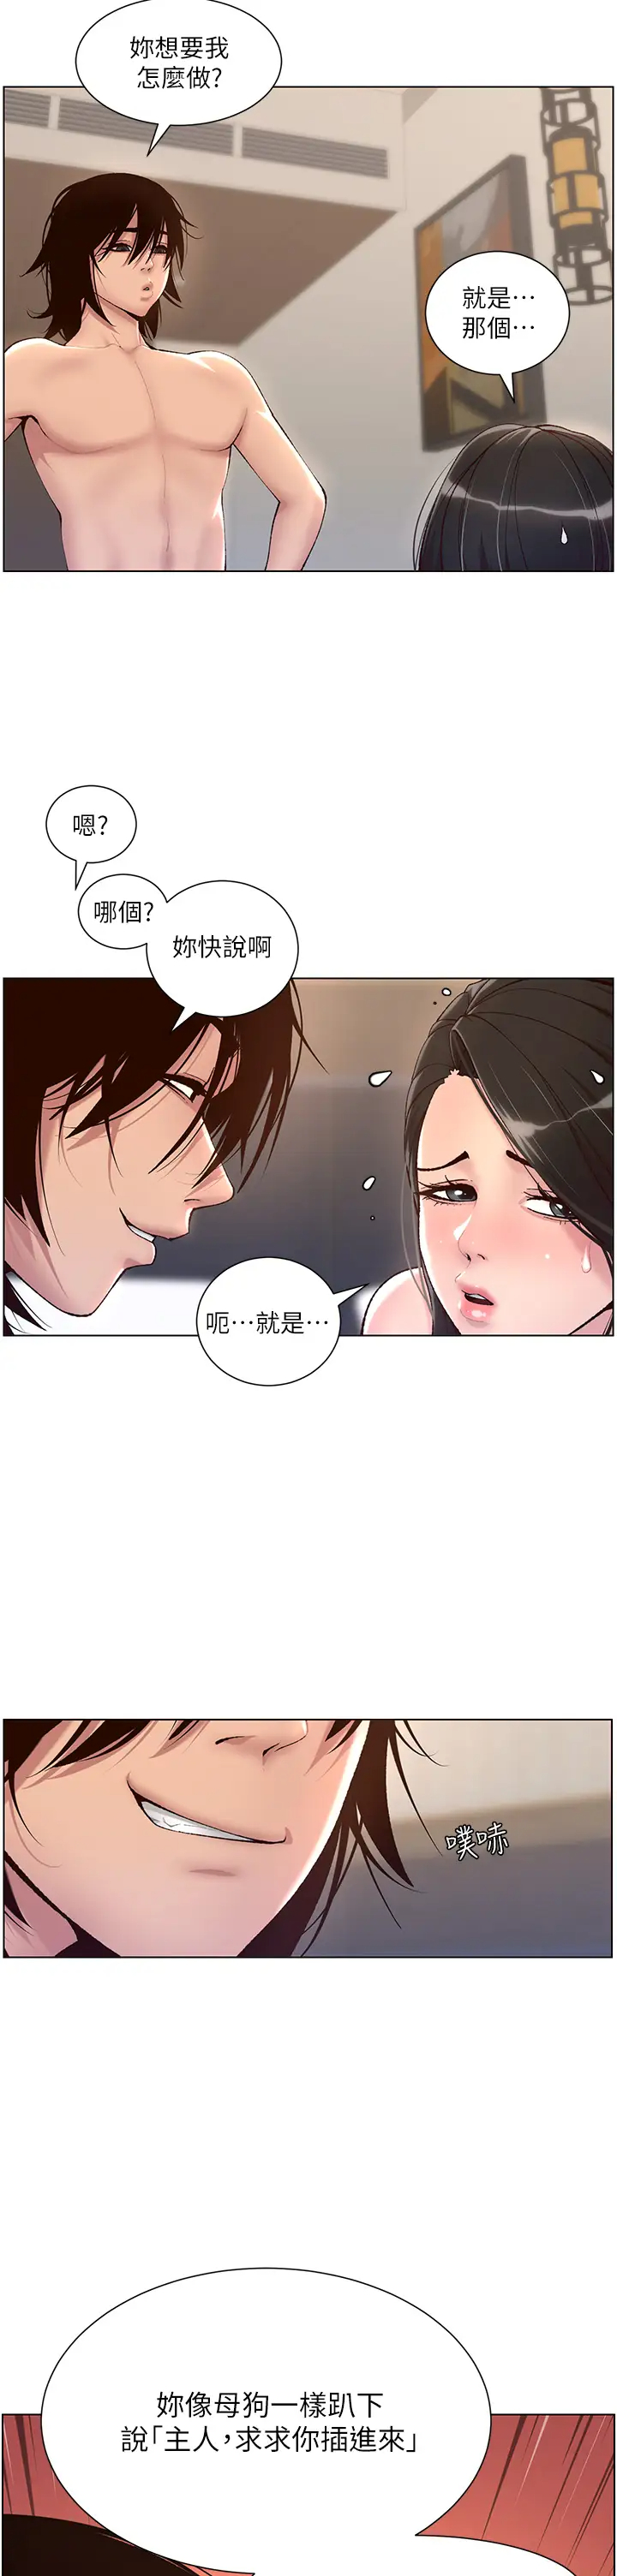 韩国污漫画 帝王App 第3话 让你爽到不要不要 13